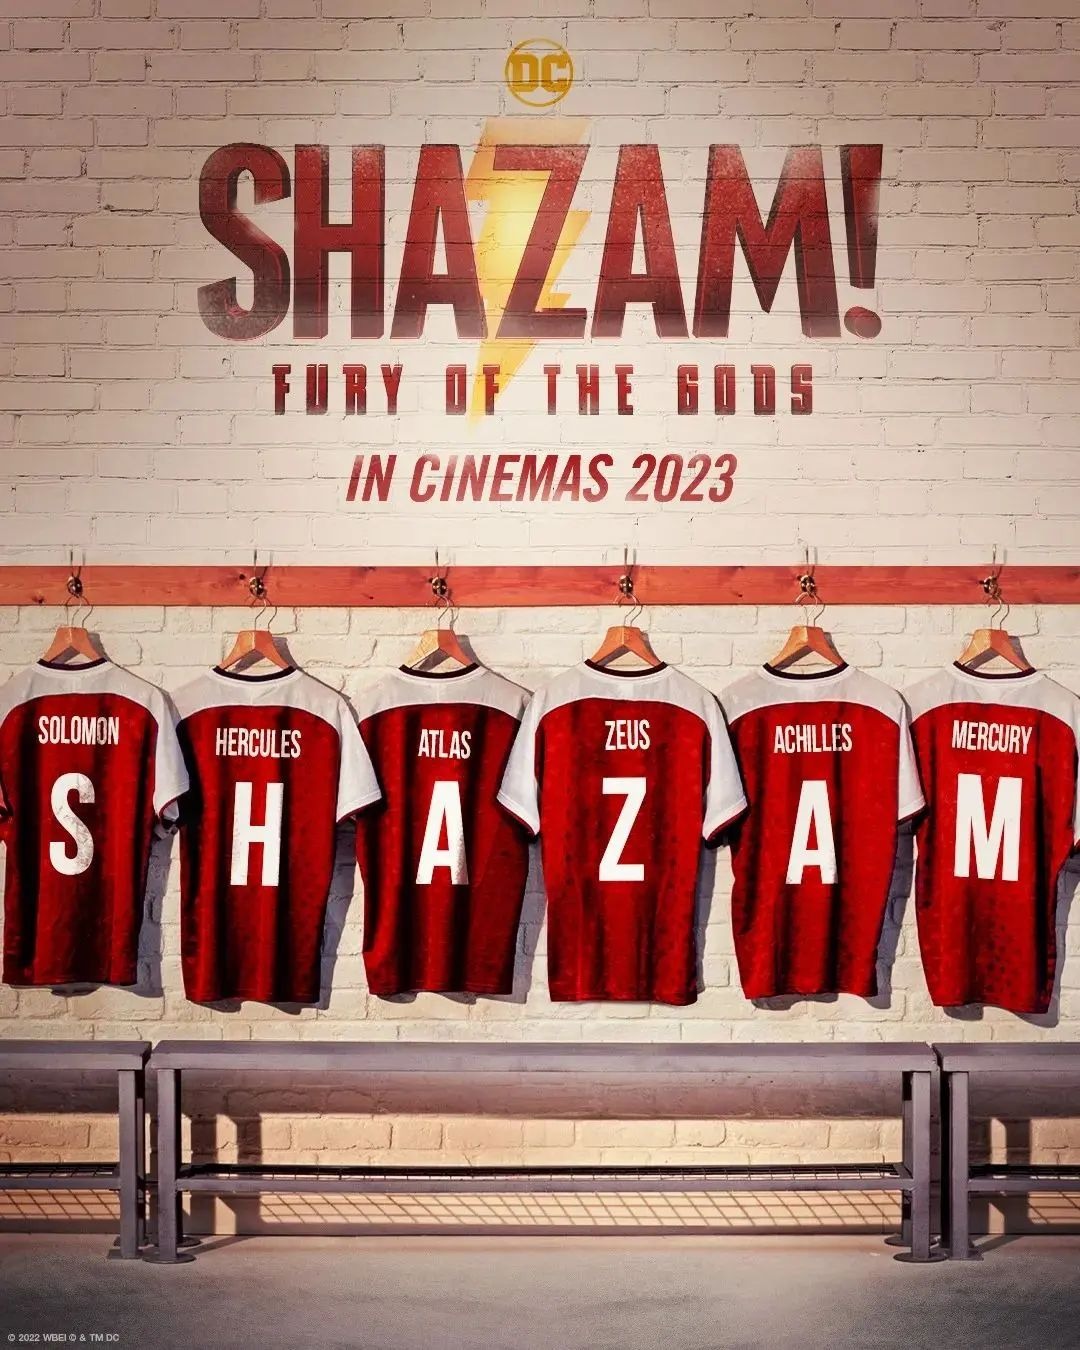 Extra Large Movie Poster Image for Shazam! Fury of the Gods (#2 of 13)